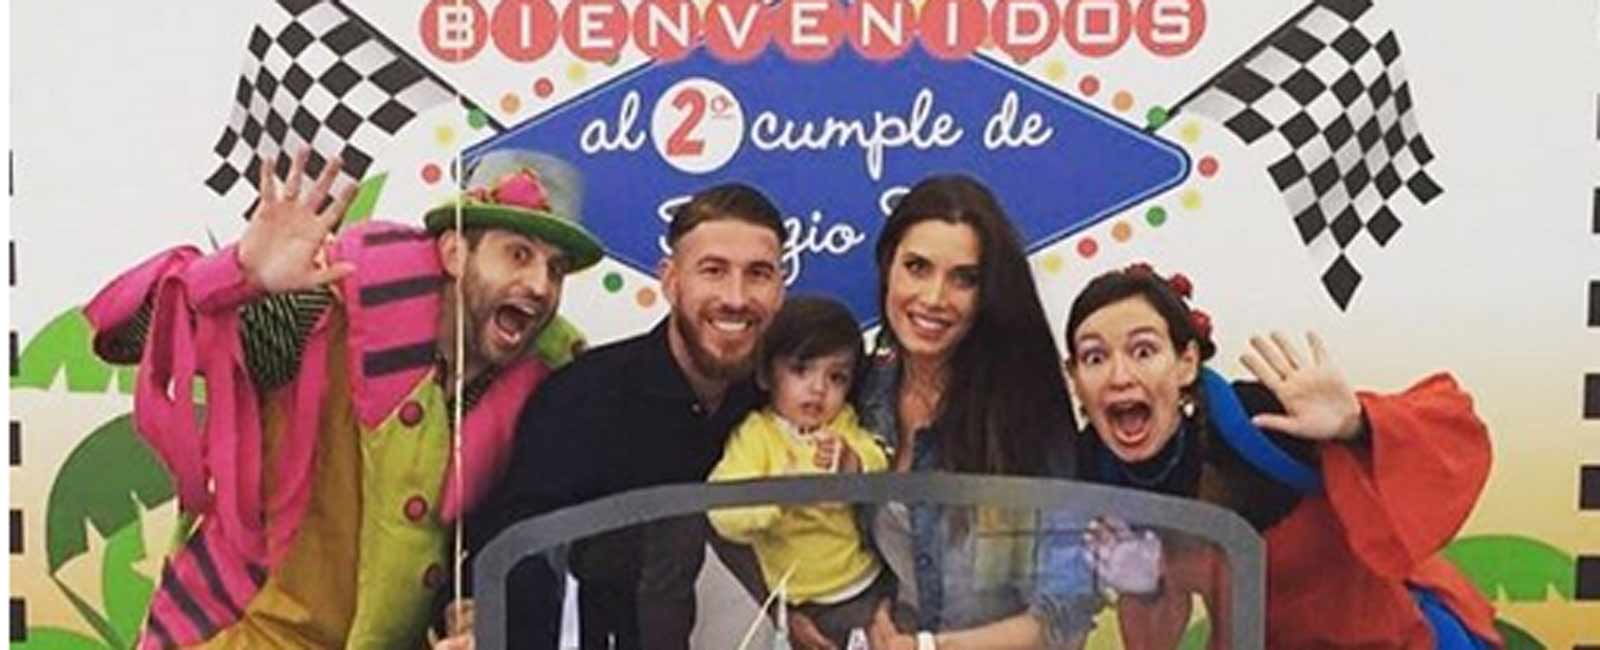 Sergio Ramos y Pilar Rubio celebran el cumpleaños de su hijo